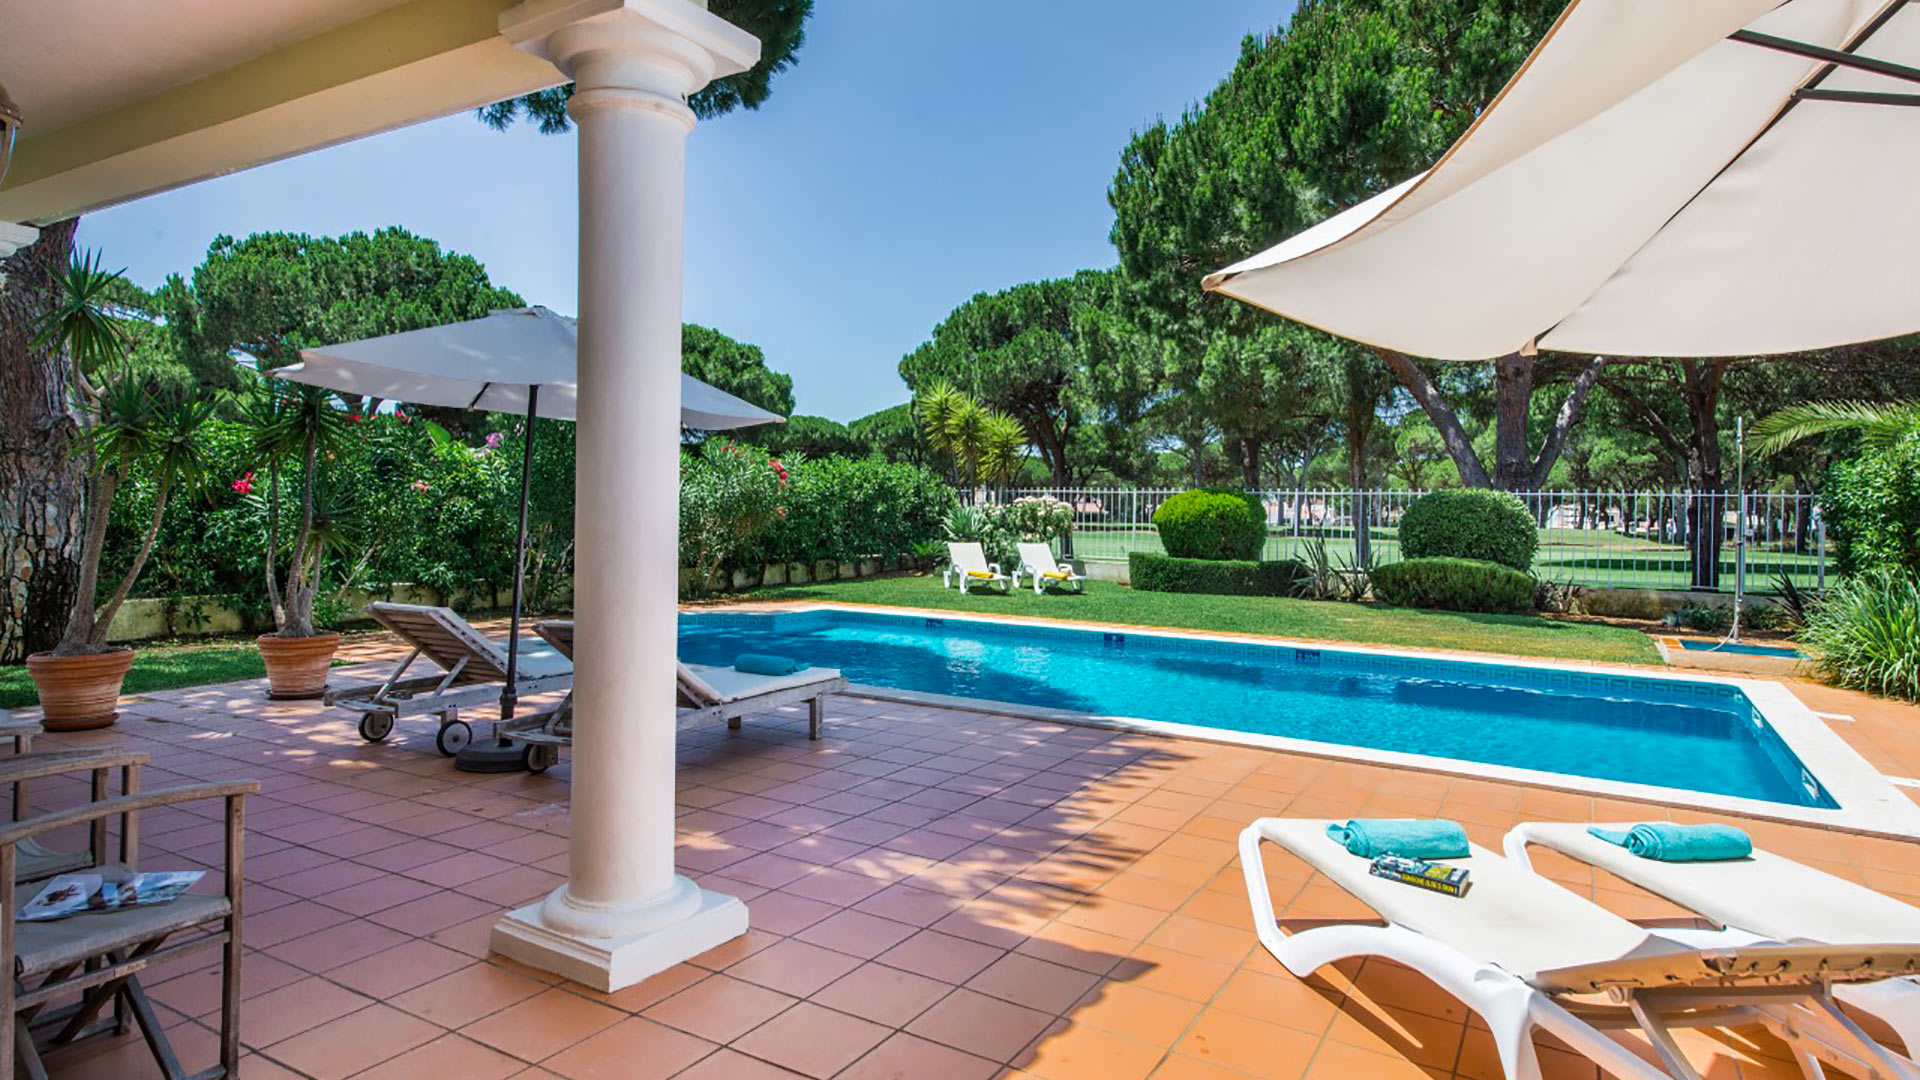 Villa Villa Luxuria, Rental in Algarve